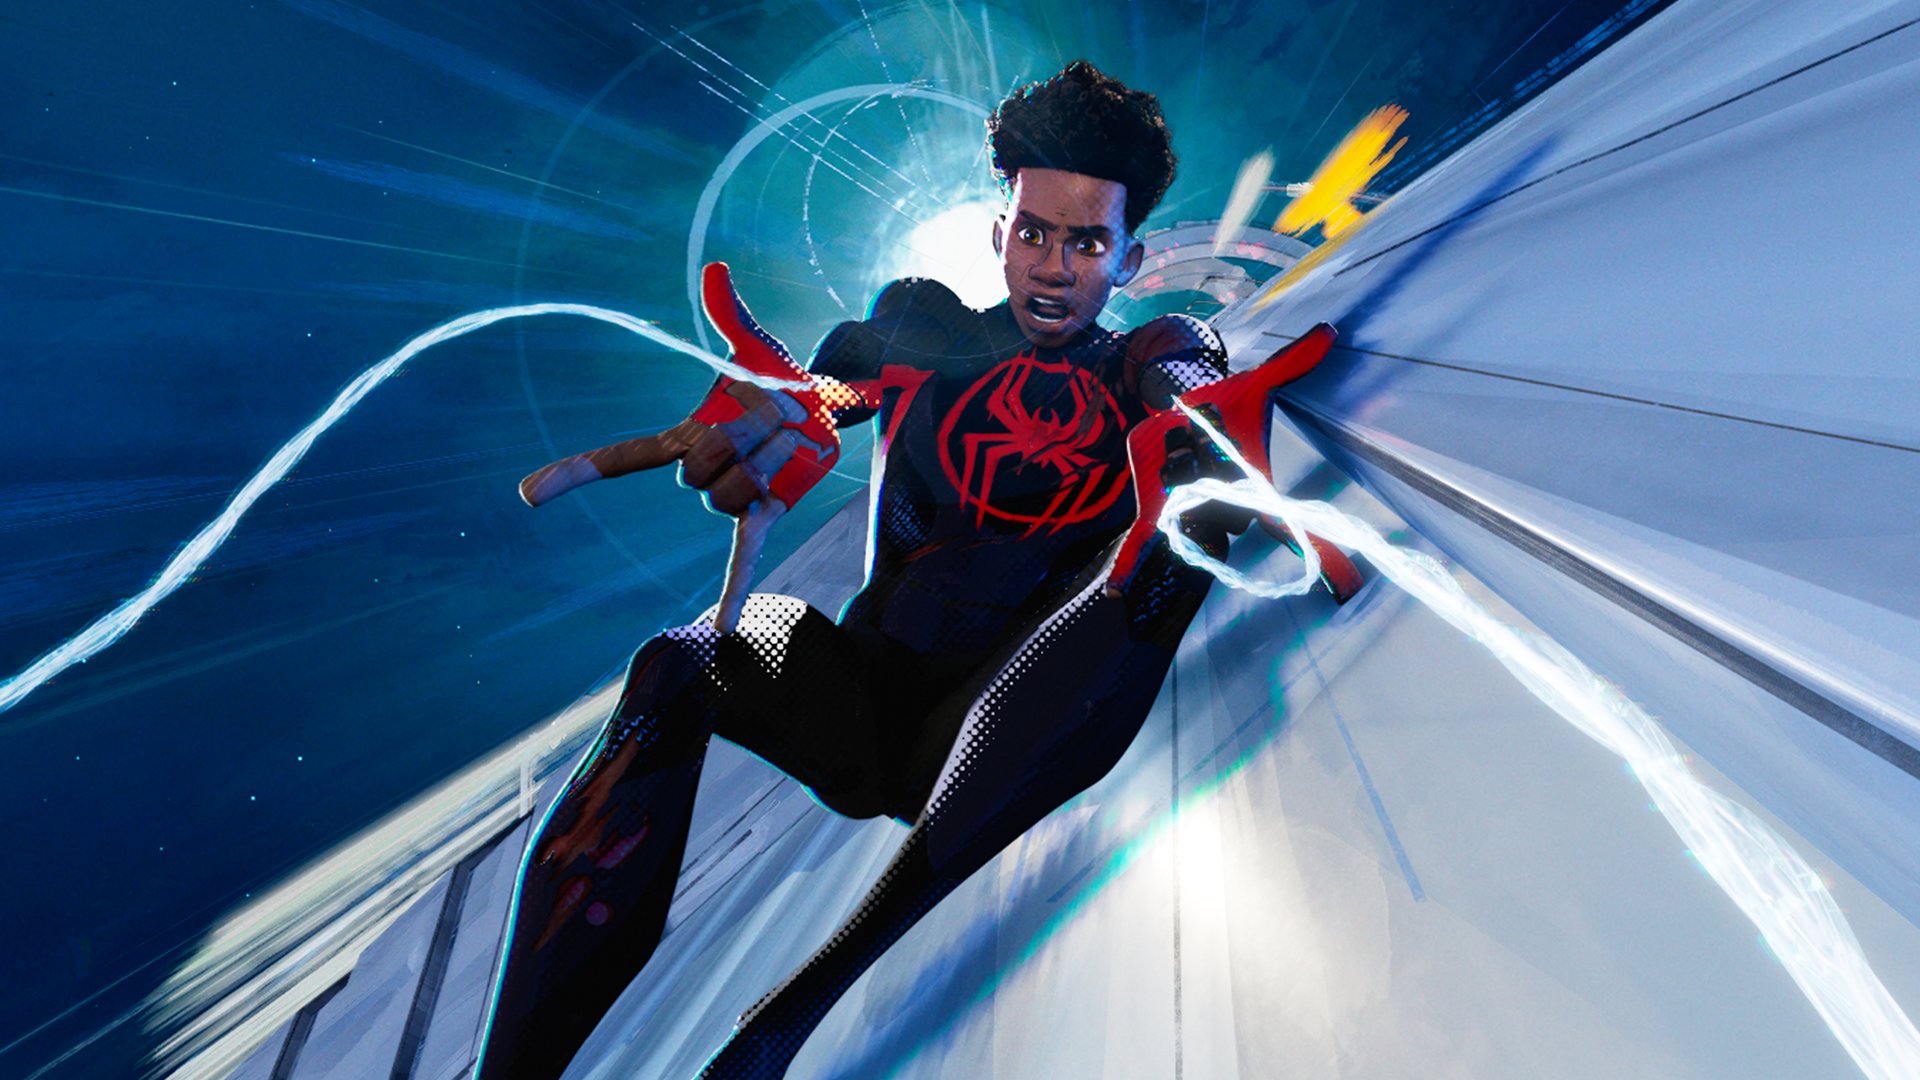 #Niedergeschlagener Marvel-Held: Sony widmet sich mit neuem „Spider-Man“-Film einem wichtigen Thema